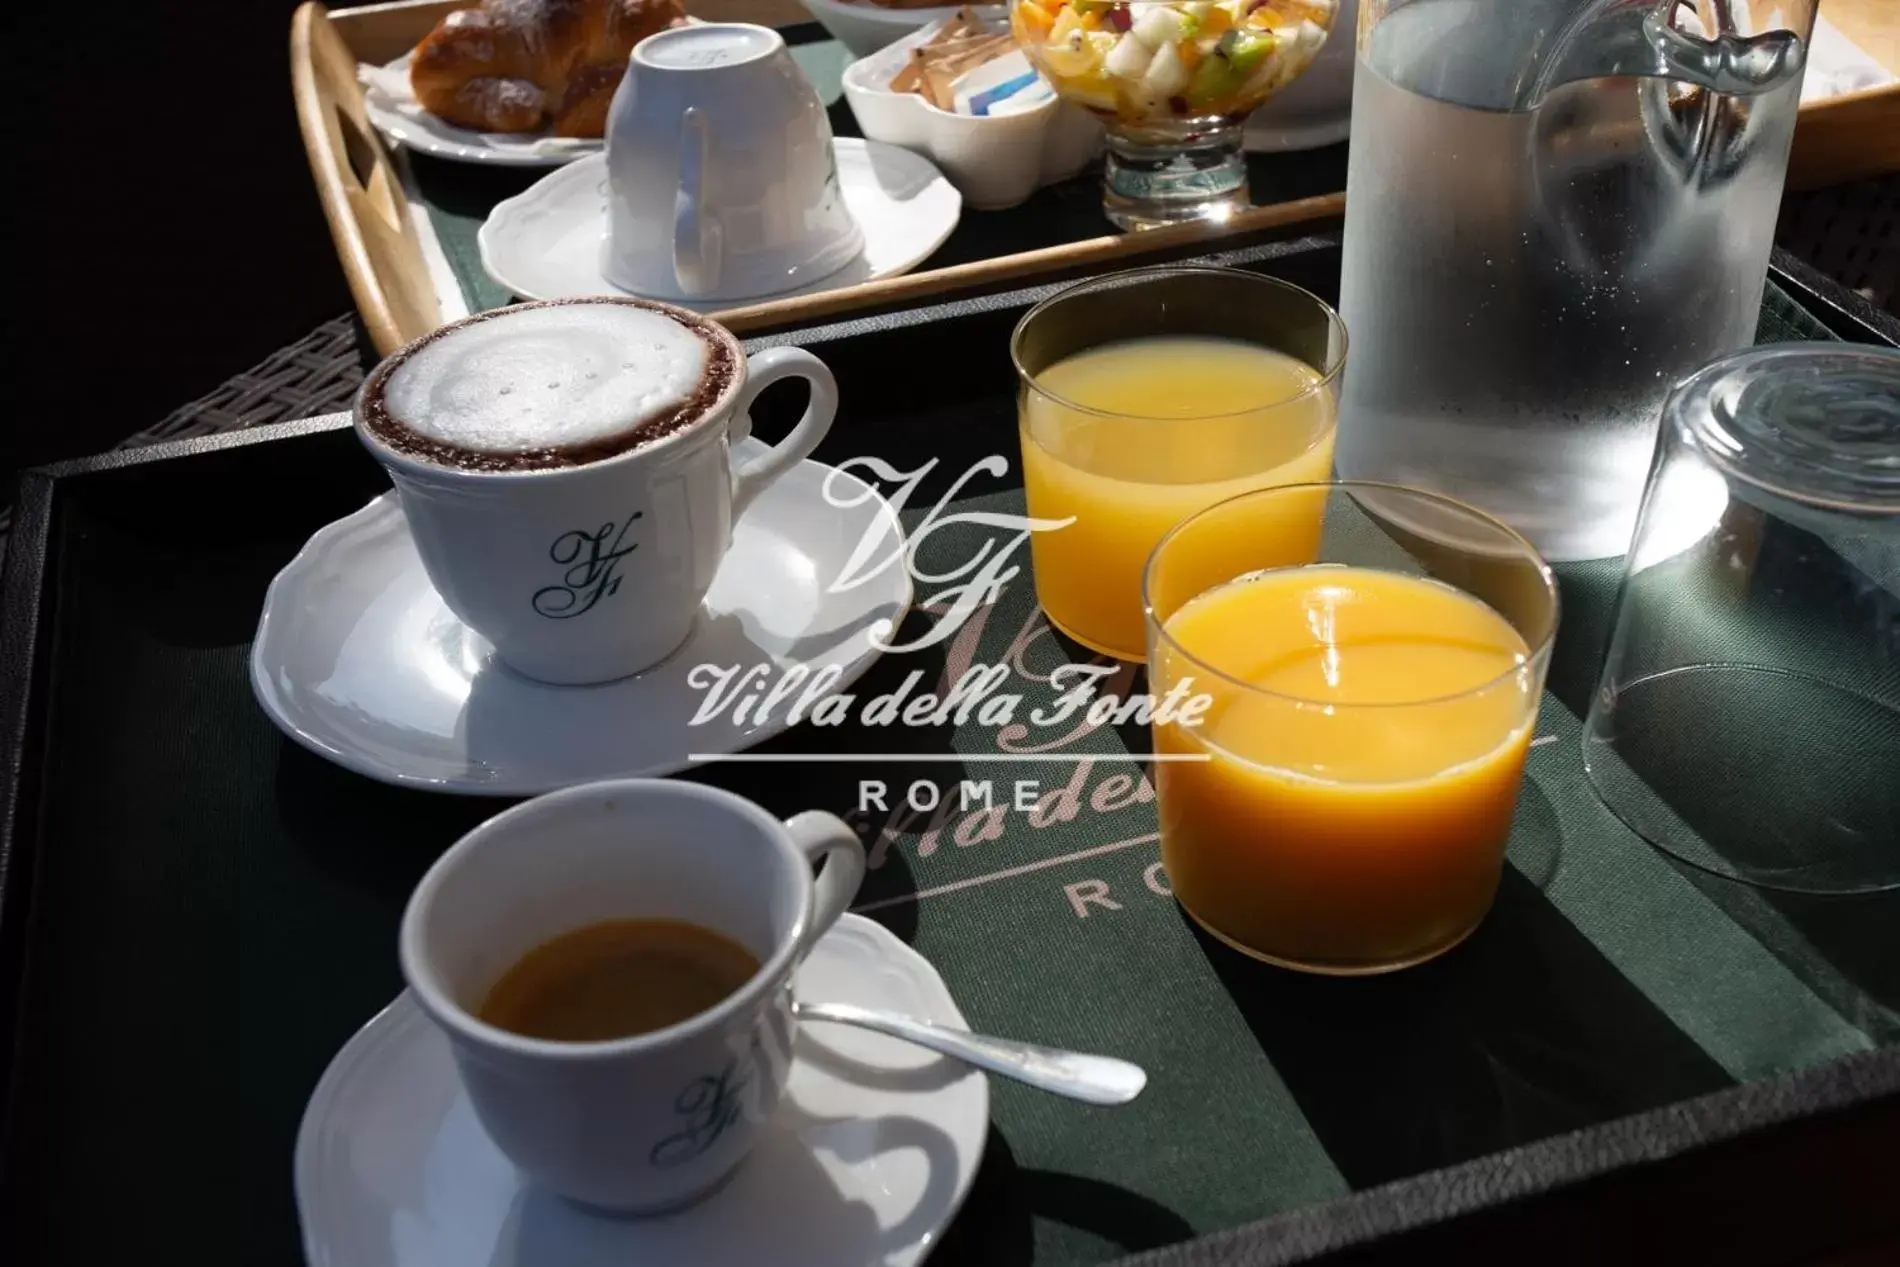 Buffet breakfast, Drinks in Villa della Fonte